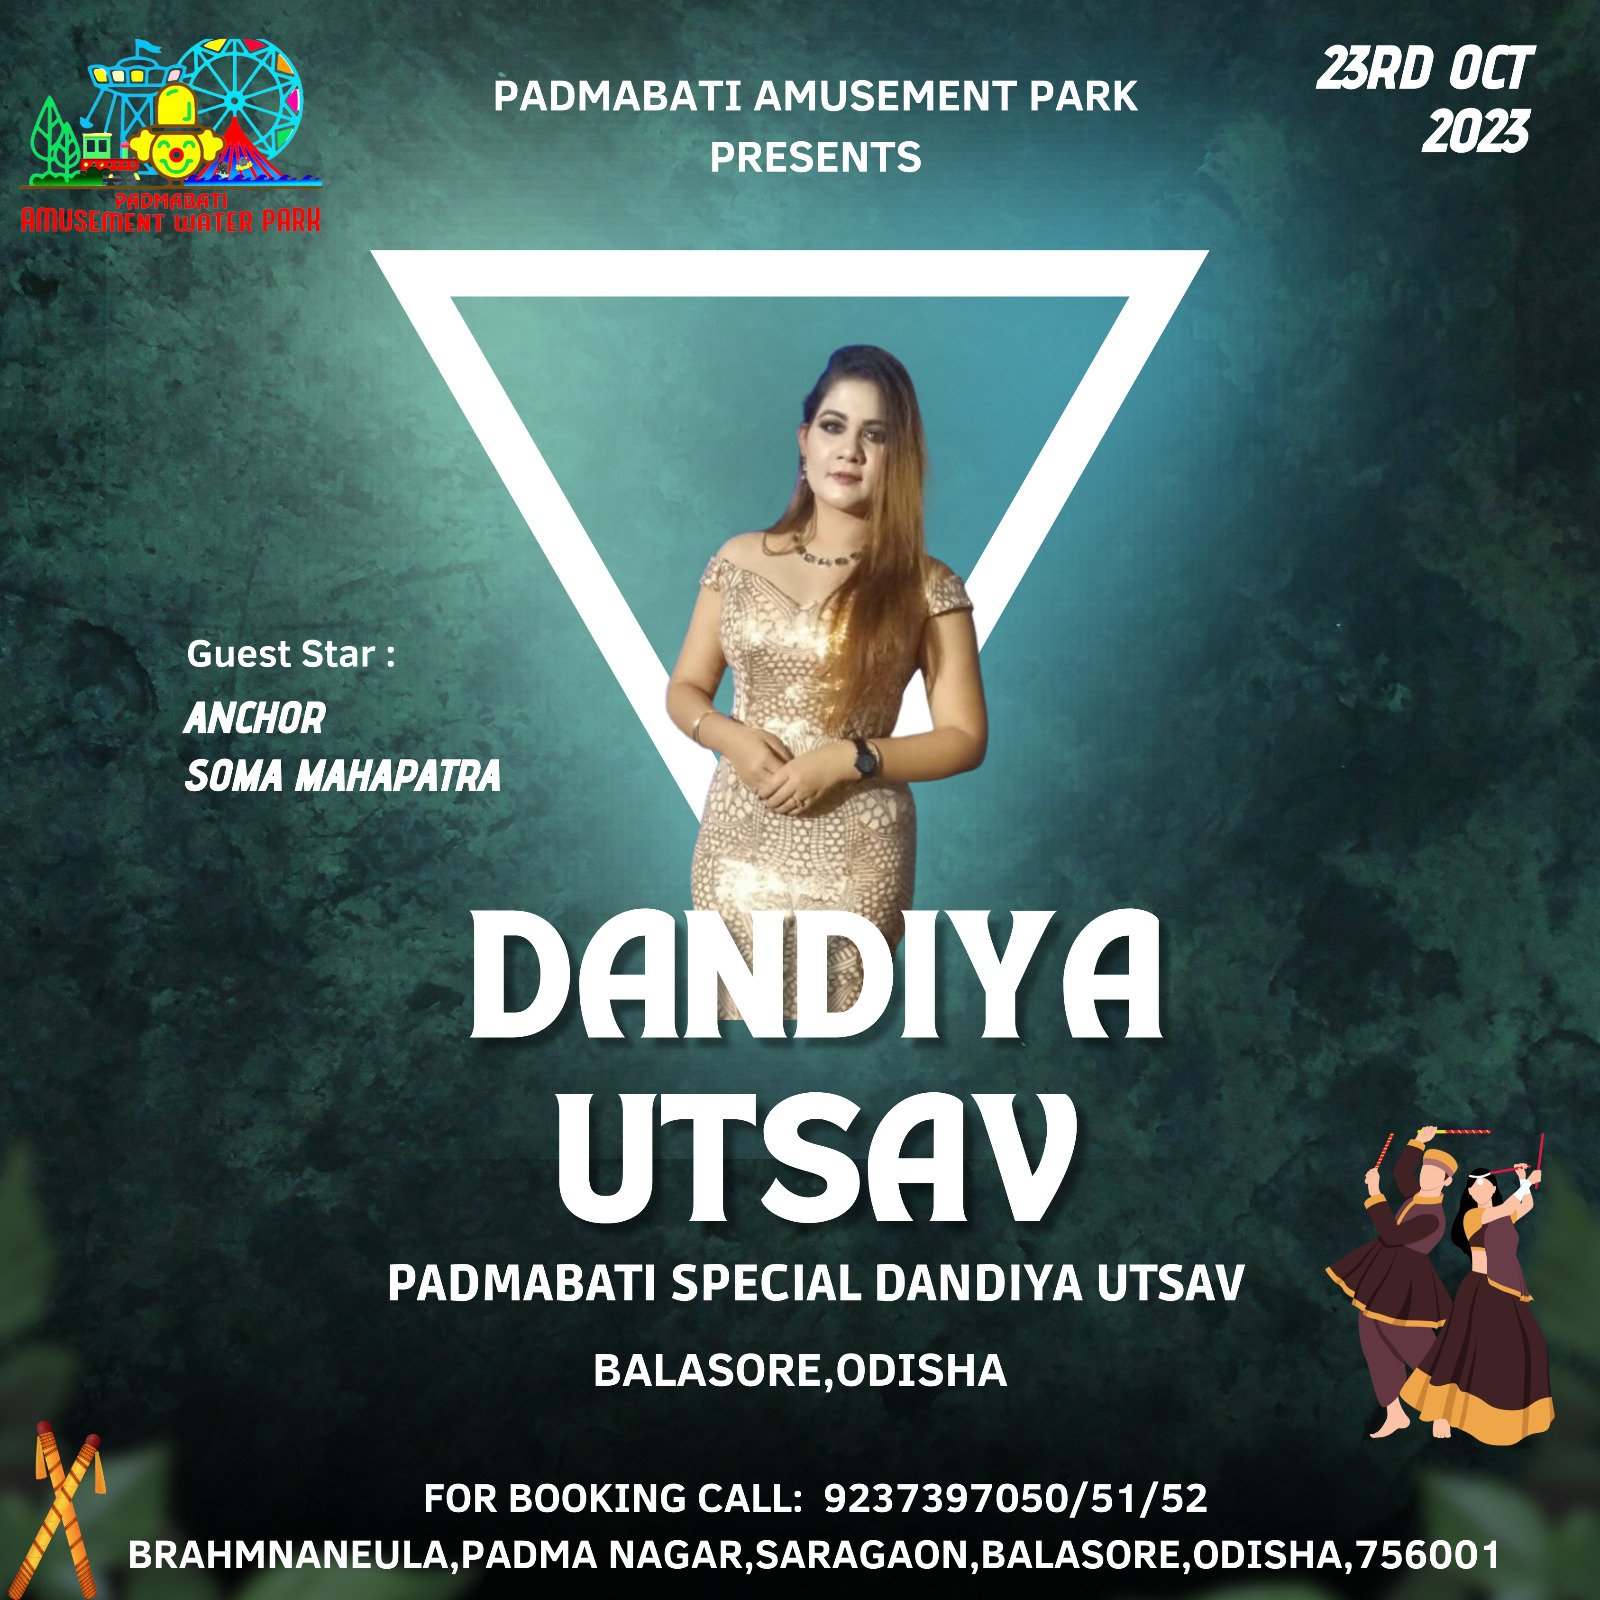 6-Padmabati Water Park-Dandiya Utsav-Star